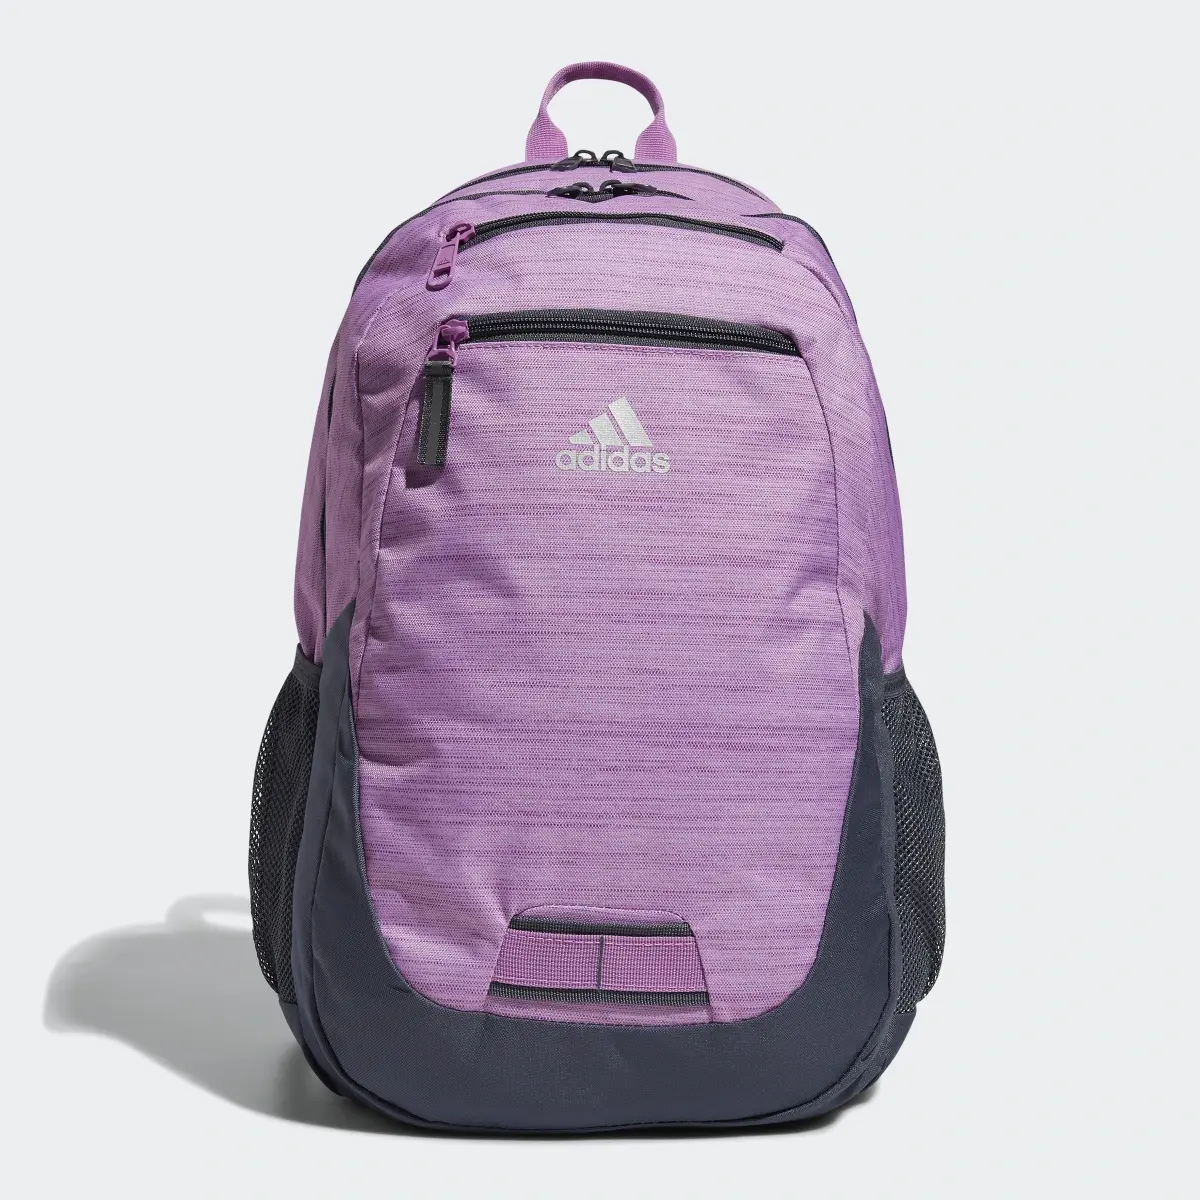 Adidas Foundation 6 Backpack. 2